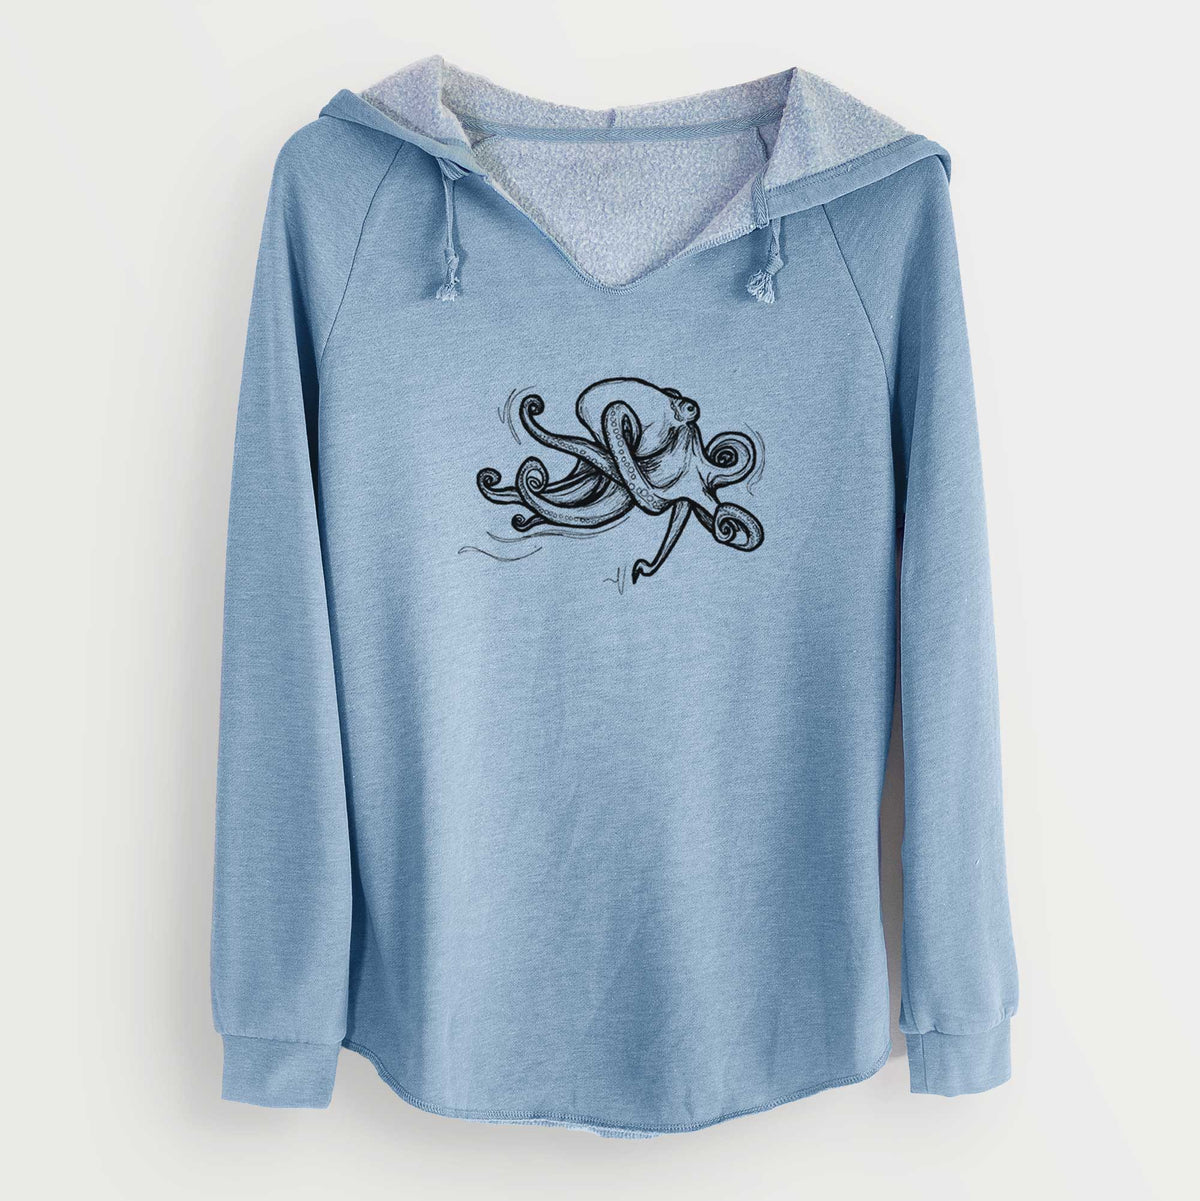 Giant Pacific Octopus - Cali Wave Hooded Sweatshirt